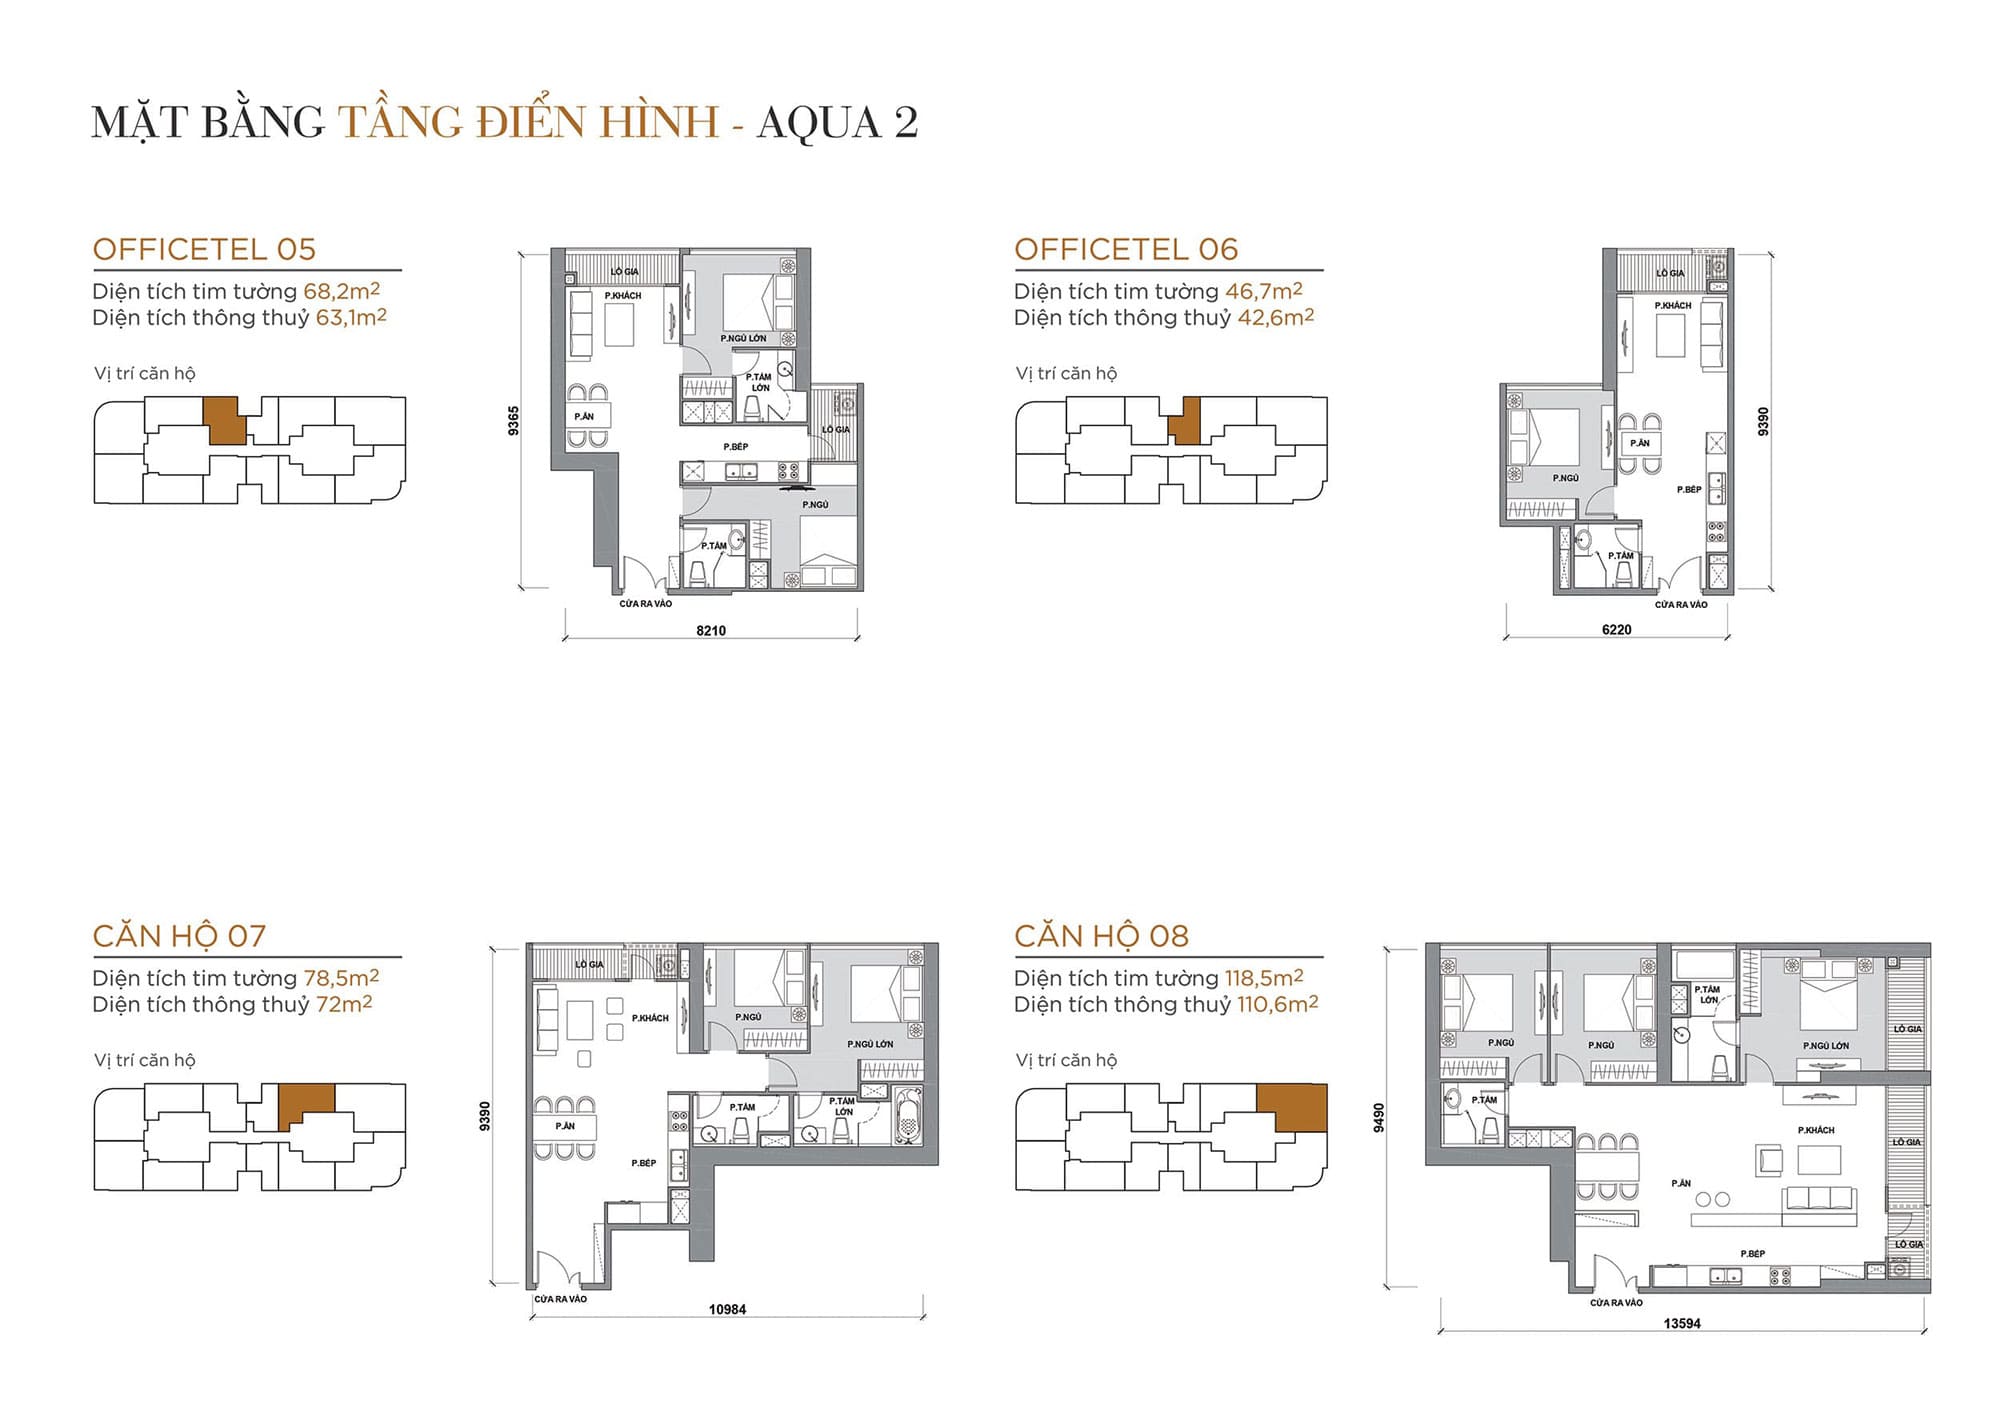 Layout căn hộ tầng điển hình tòa Aqua 2 loại Officetel 05, Officetel 06, Căn hộ 07, Căn hộ 08.